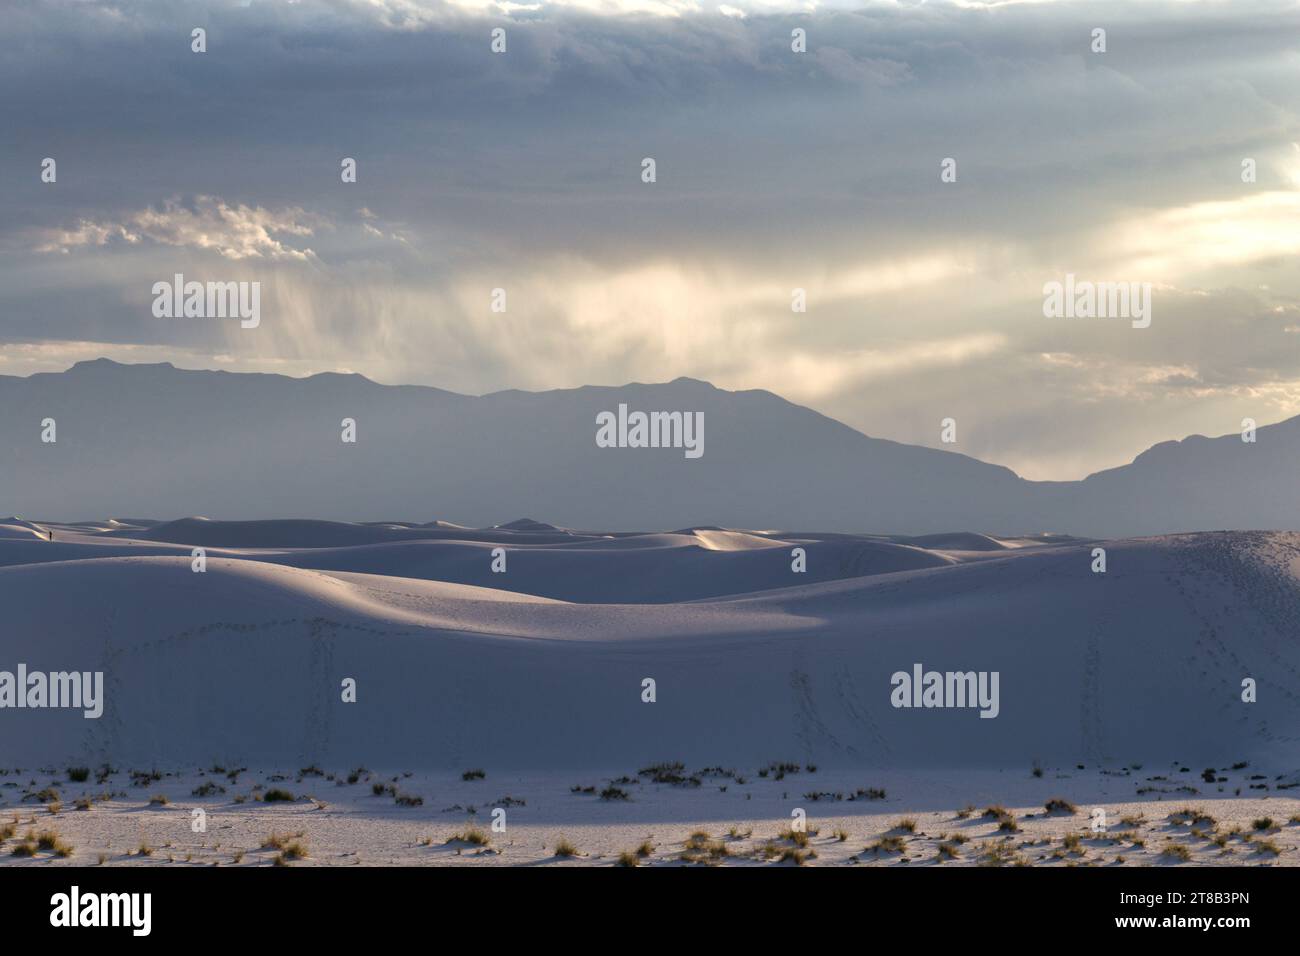 Innalzandosi dal cuore del bacino di Tularosa è una delle più grandi meraviglie naturali del mondo: Le scintillanti sabbie bianche del New Mexico. Foto Stock